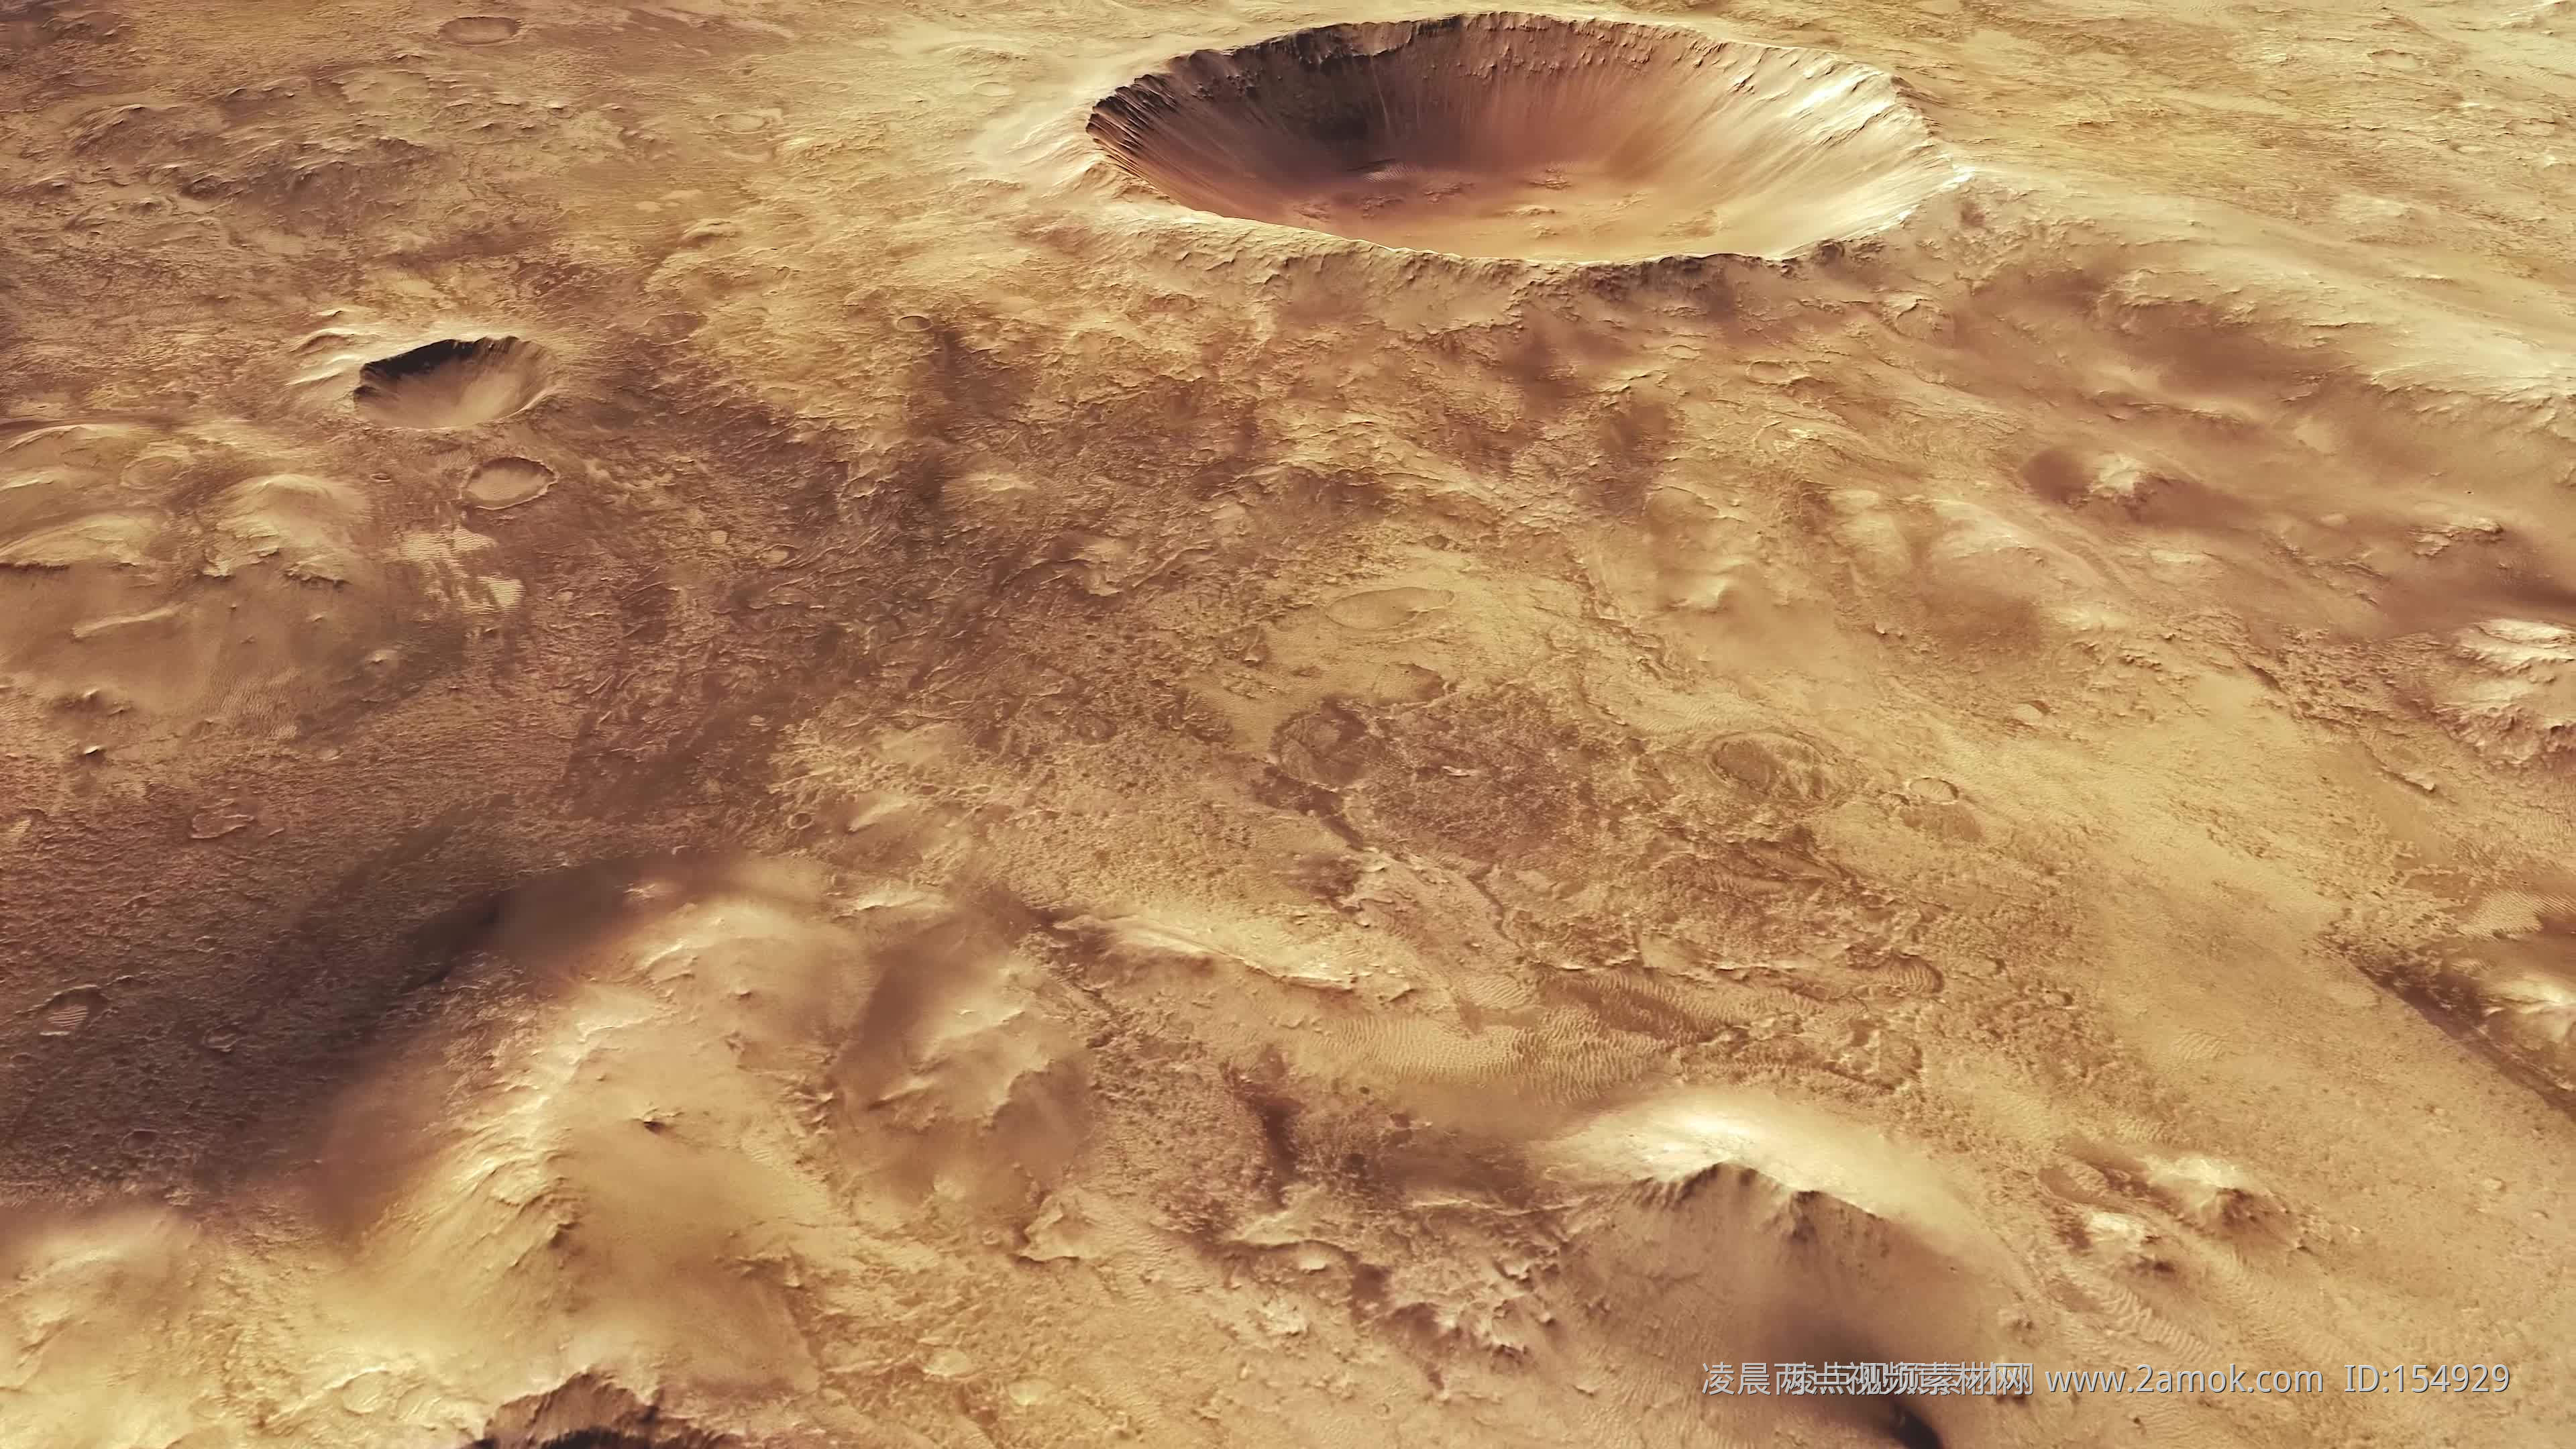 “祝融号”从火星发来自拍照和火星影像图 - 2021年6月11日, 俄罗斯卫星通讯社